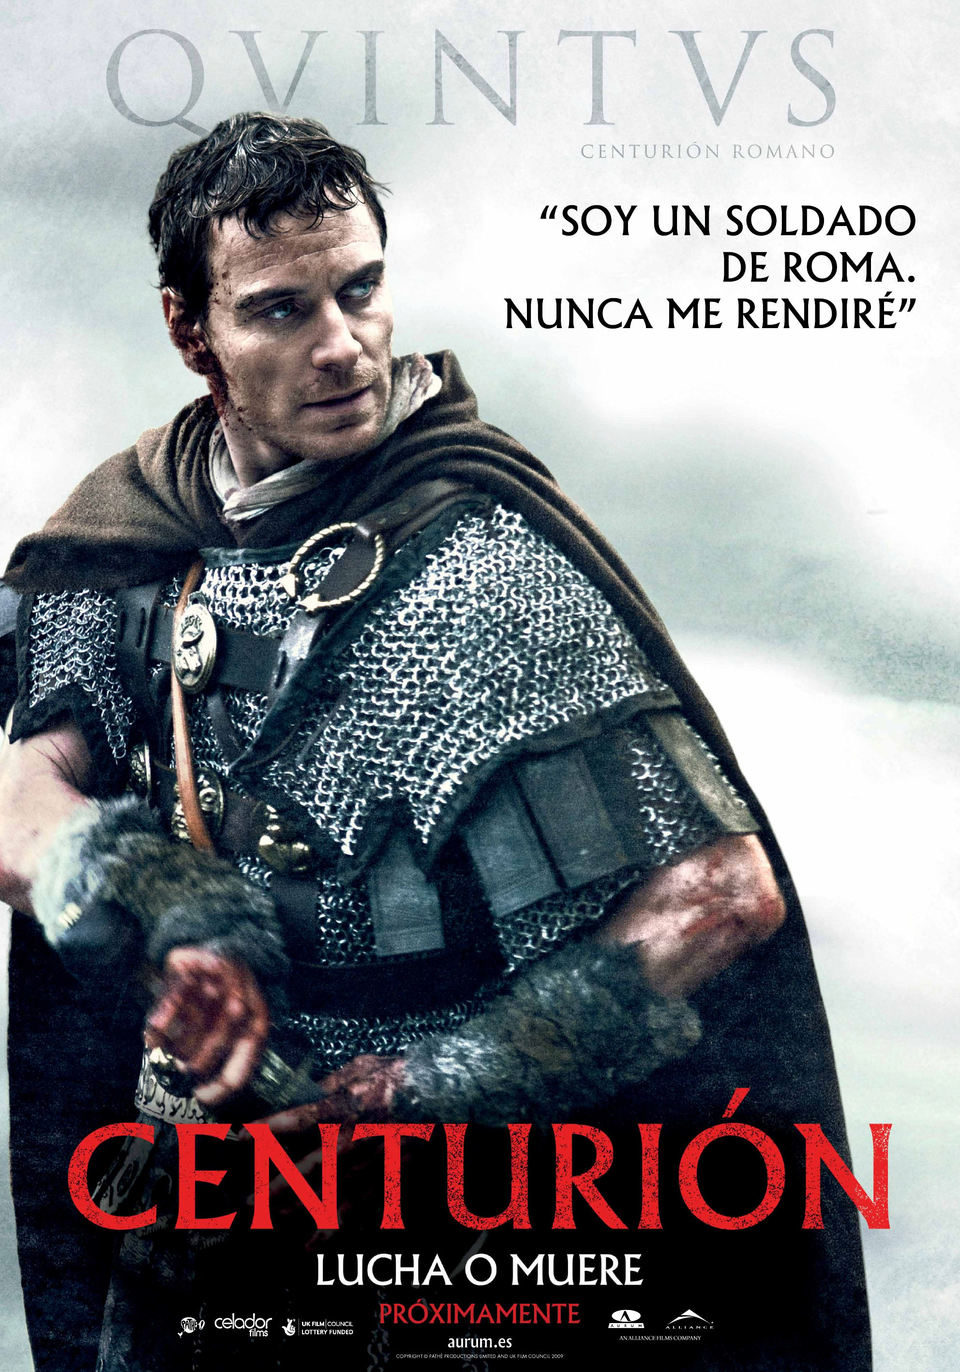 Poster of Centurion - Quintus